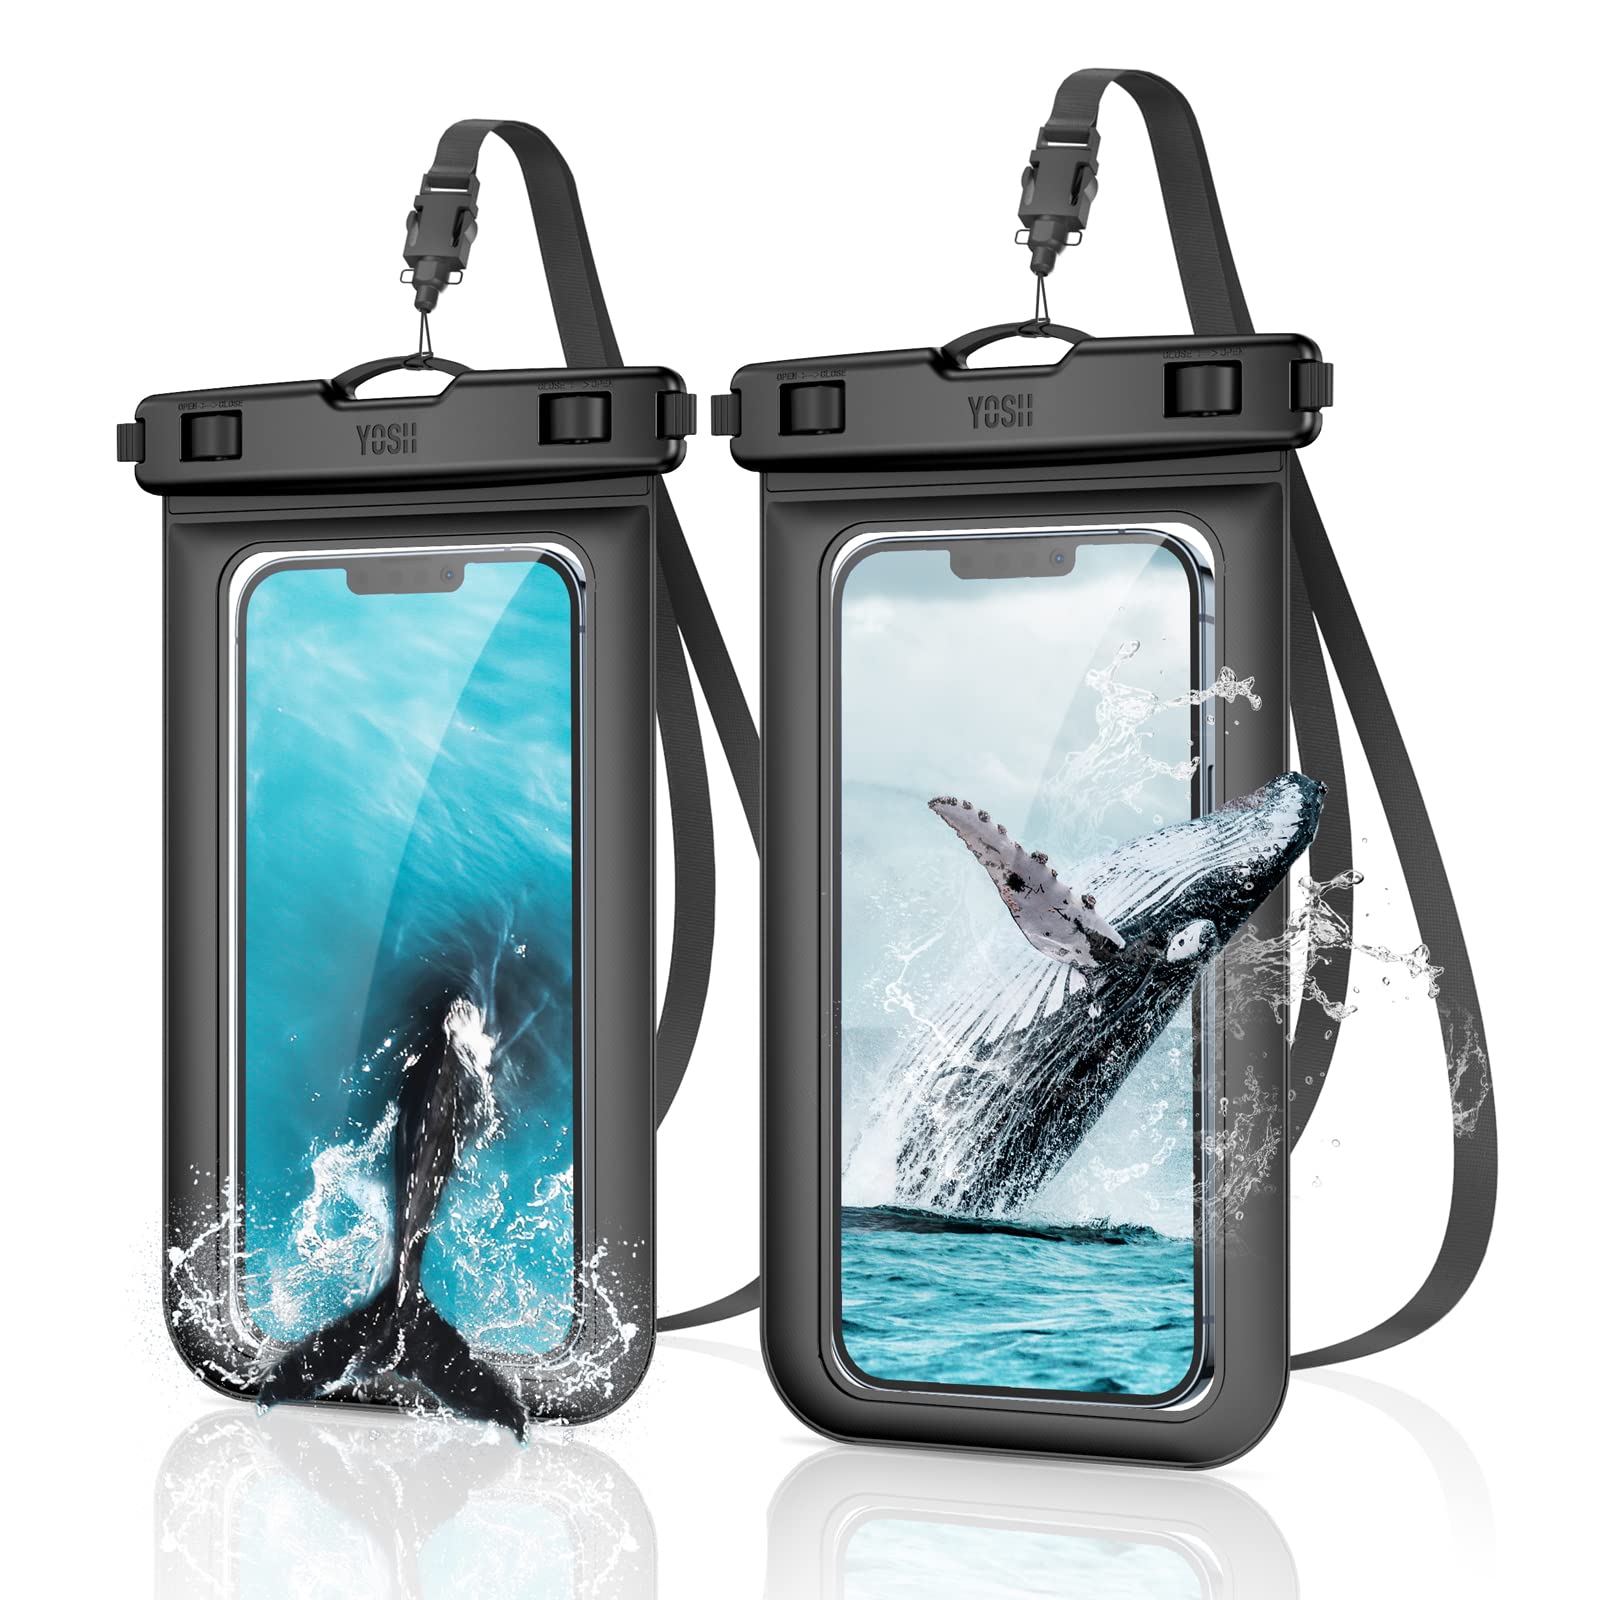 2枚セット YOSH スマホ防水ケース IPX8認定 iPhone 11 Pro Max X XR XS 8 7 Androidに対応 水中 撮影 タッチ可 風呂 海 プール 釣り 雨 潜水 水泳 雪 温泉など適用 防水カバー 防水ケース スマホ用 黒